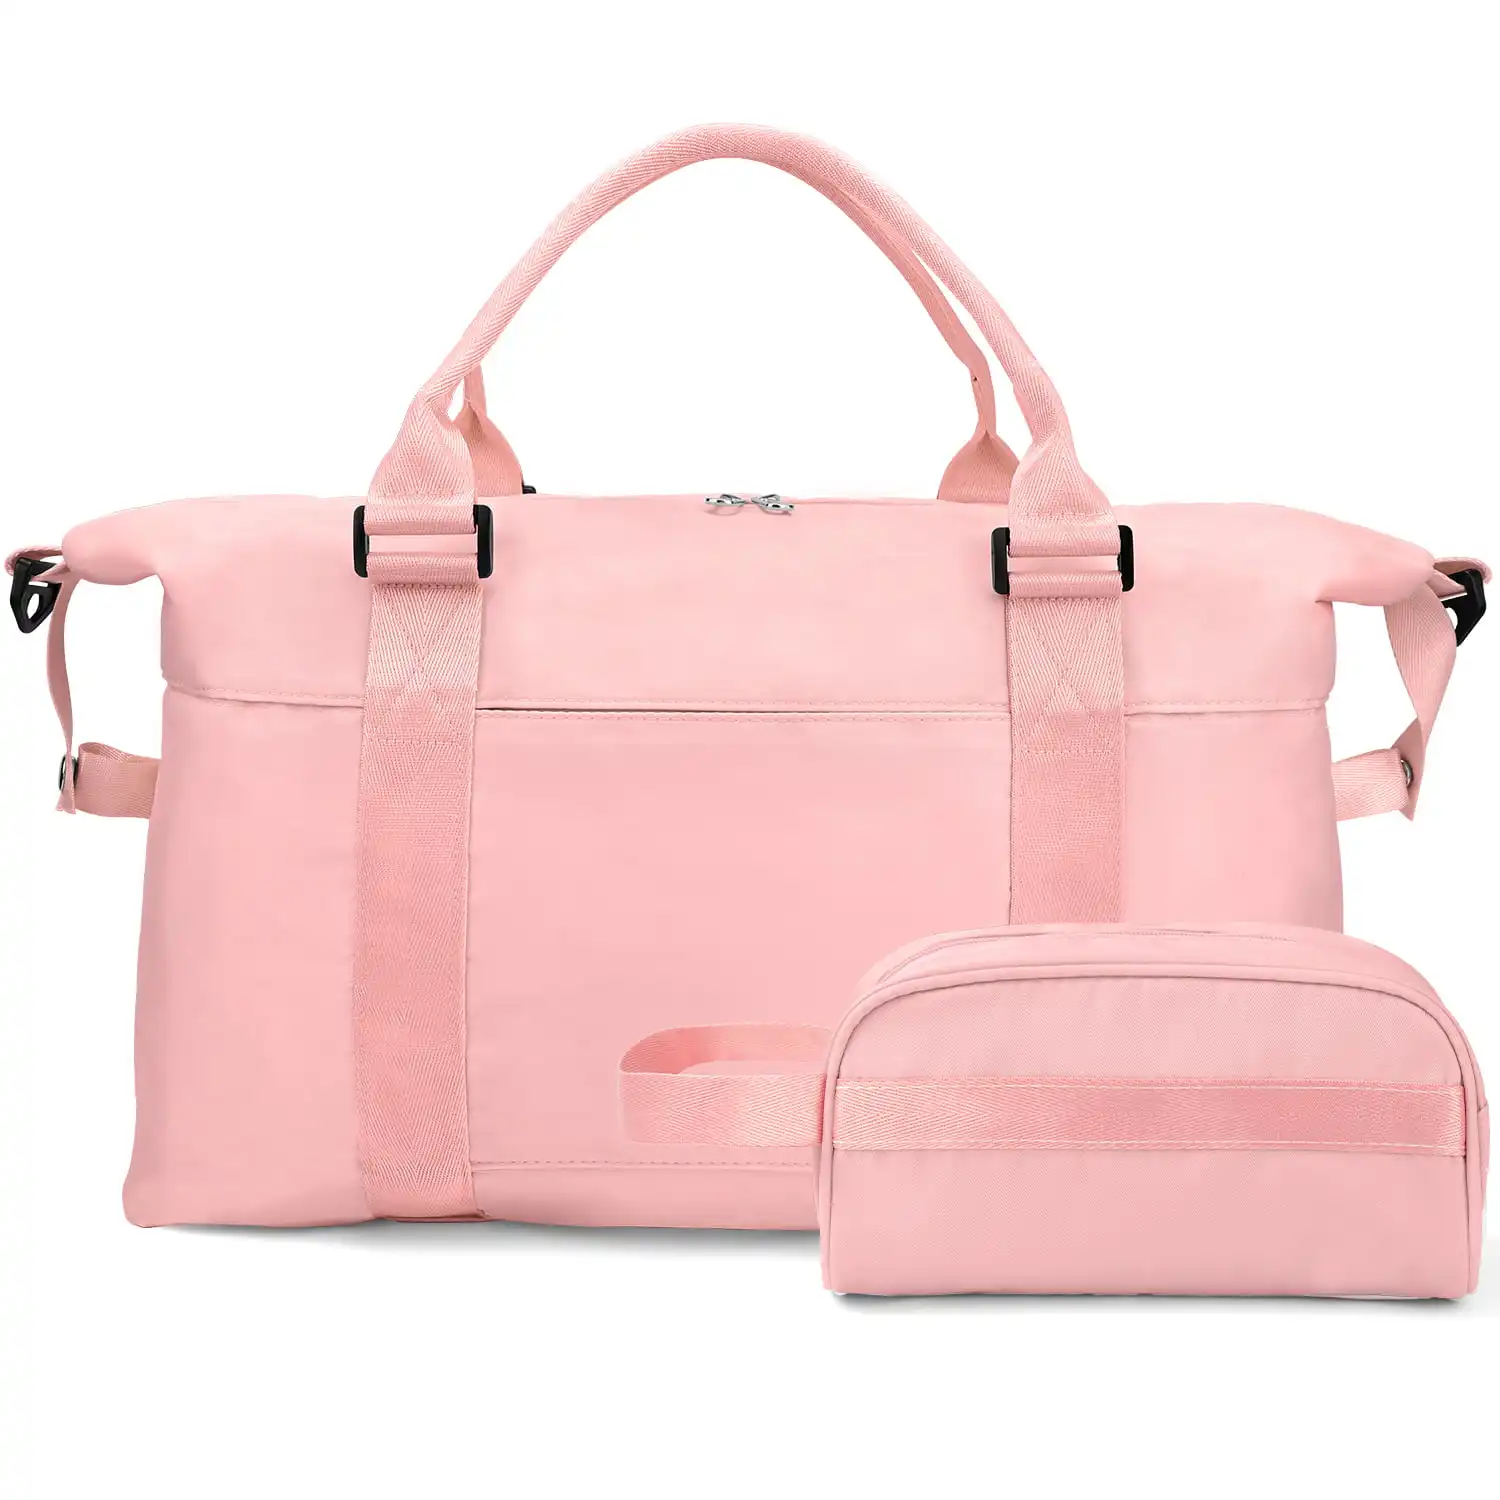 Bolsa de artesanato lilalila duffle, bolsa de alta qualidade e durável, perfeita para carregar seus essenciais de viagem